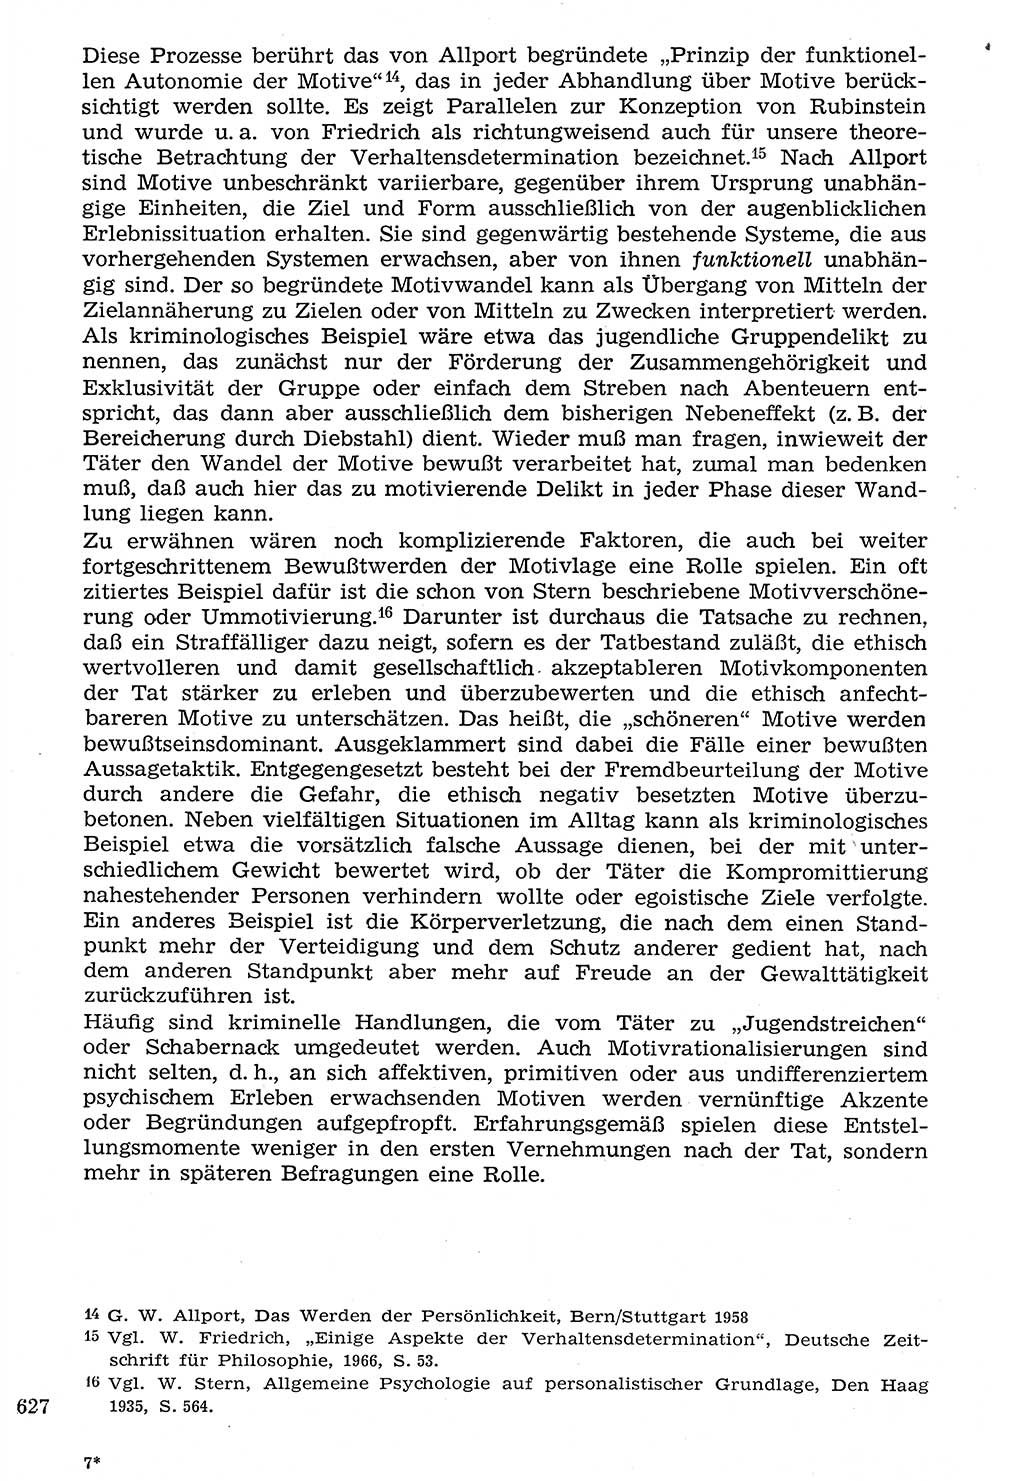 Staat und Recht (StuR), 17. Jahrgang [Deutsche Demokratische Republik (DDR)] 1968, Seite 627 (StuR DDR 1968, S. 627)